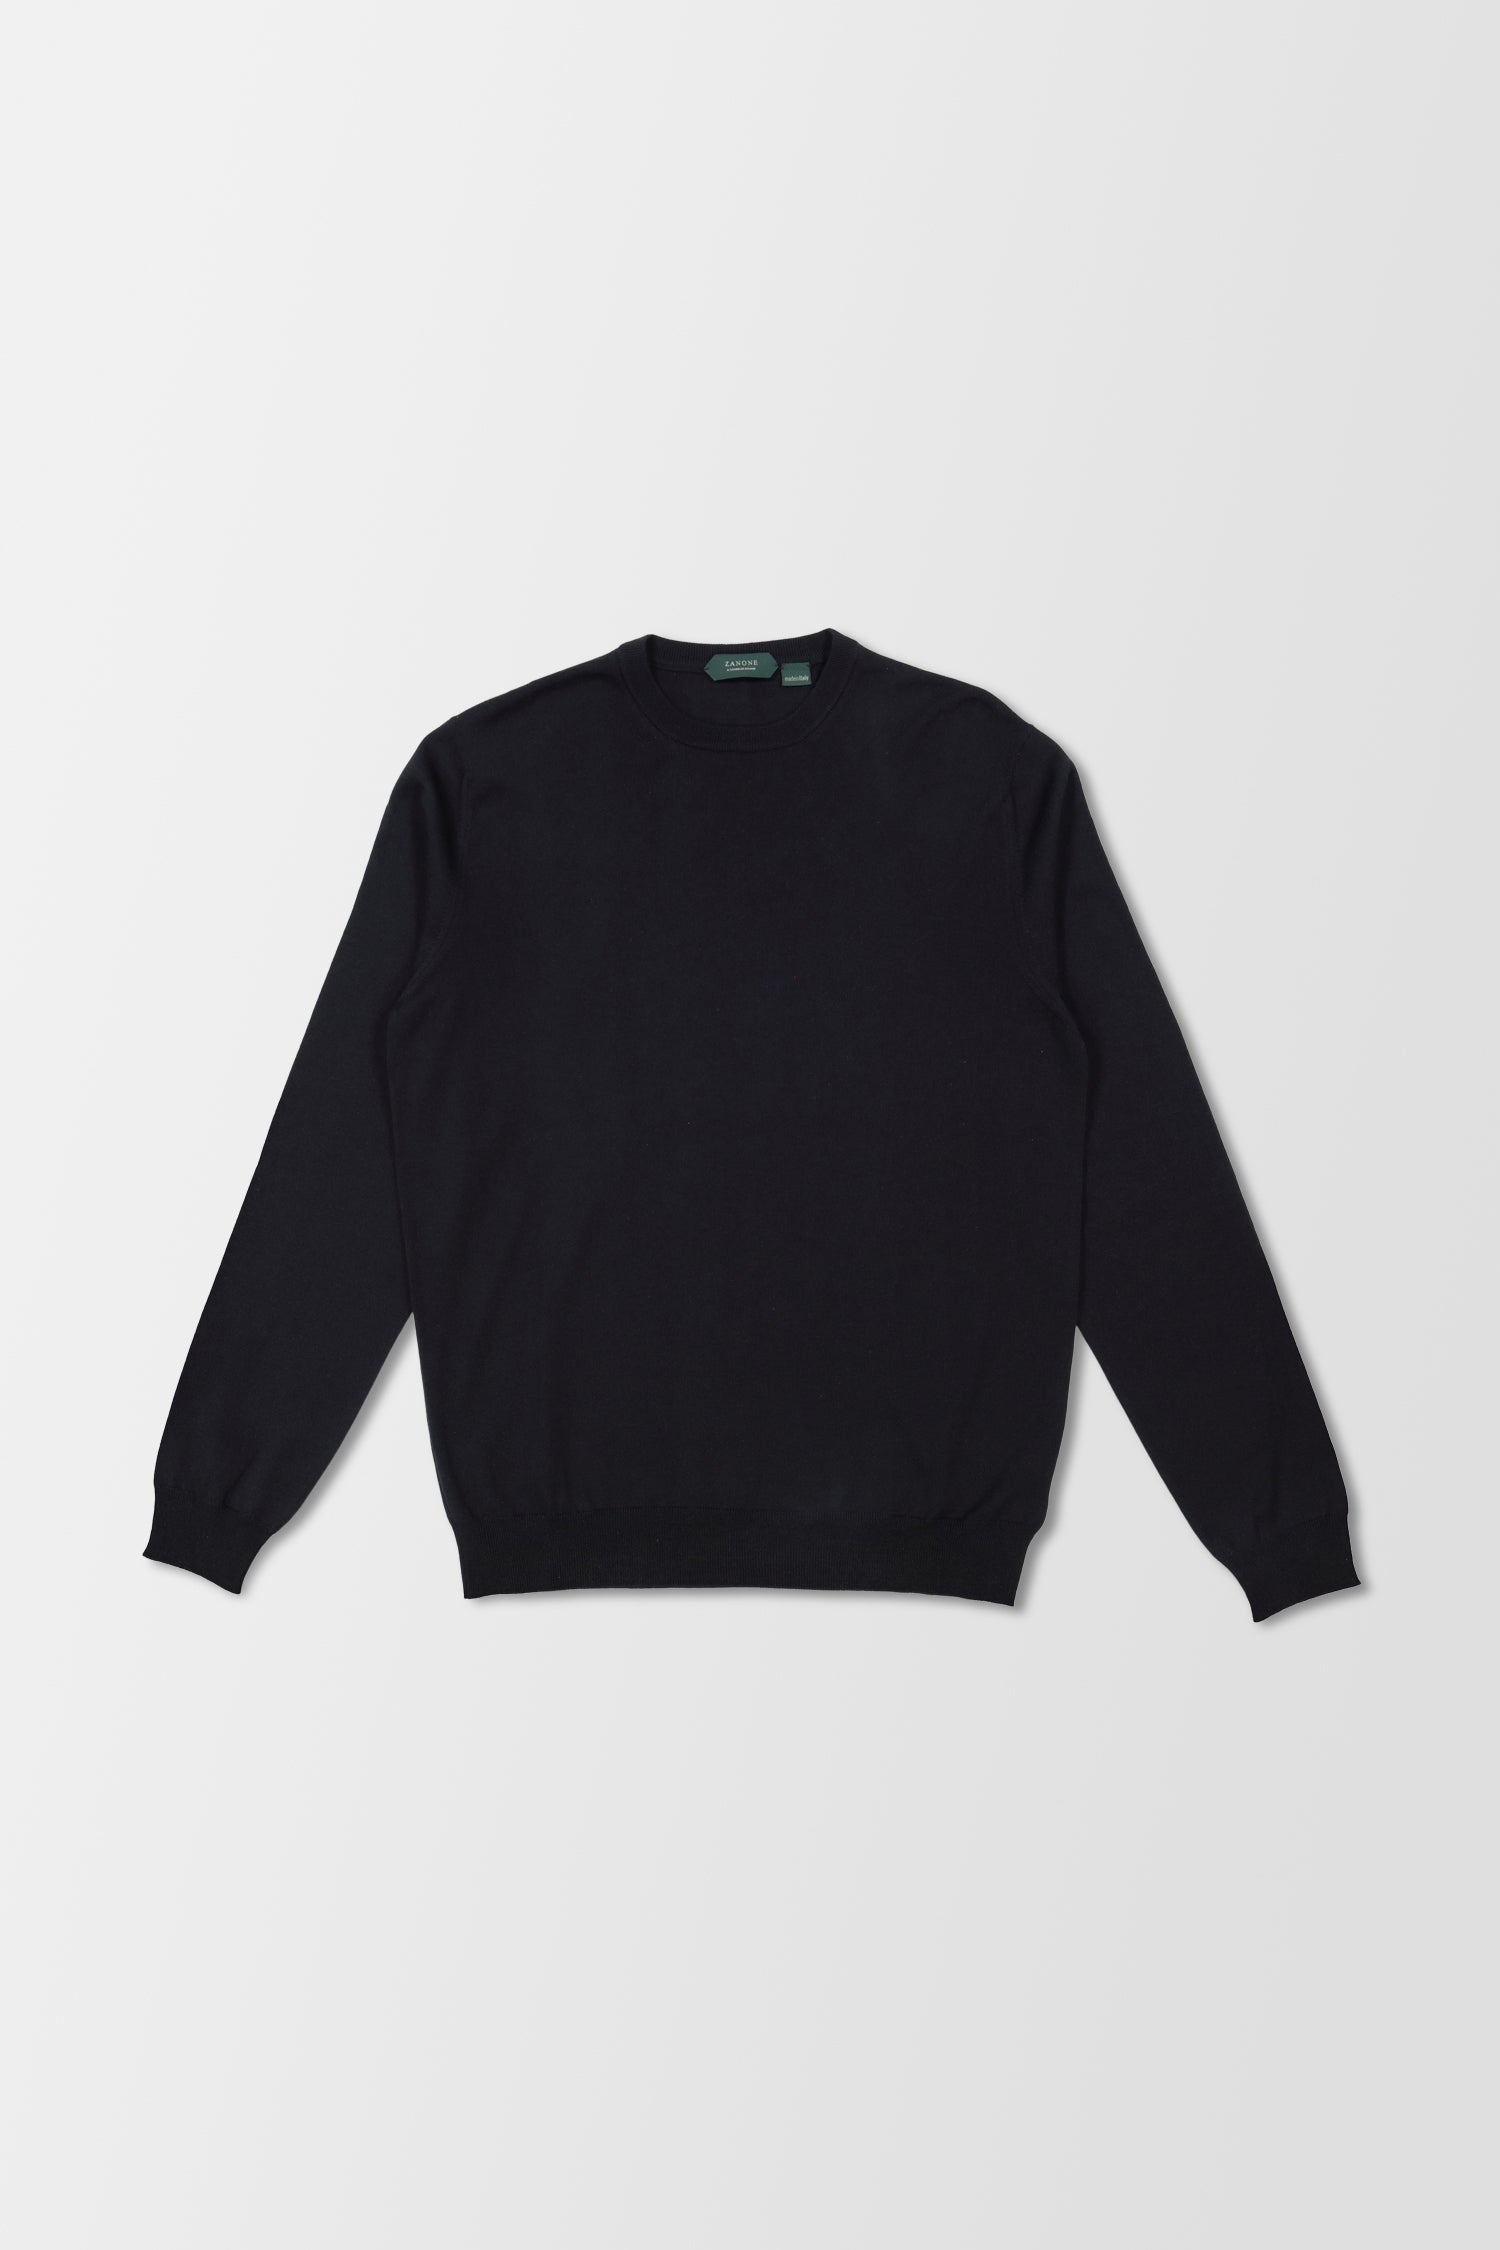 Zanone Navy Sweater